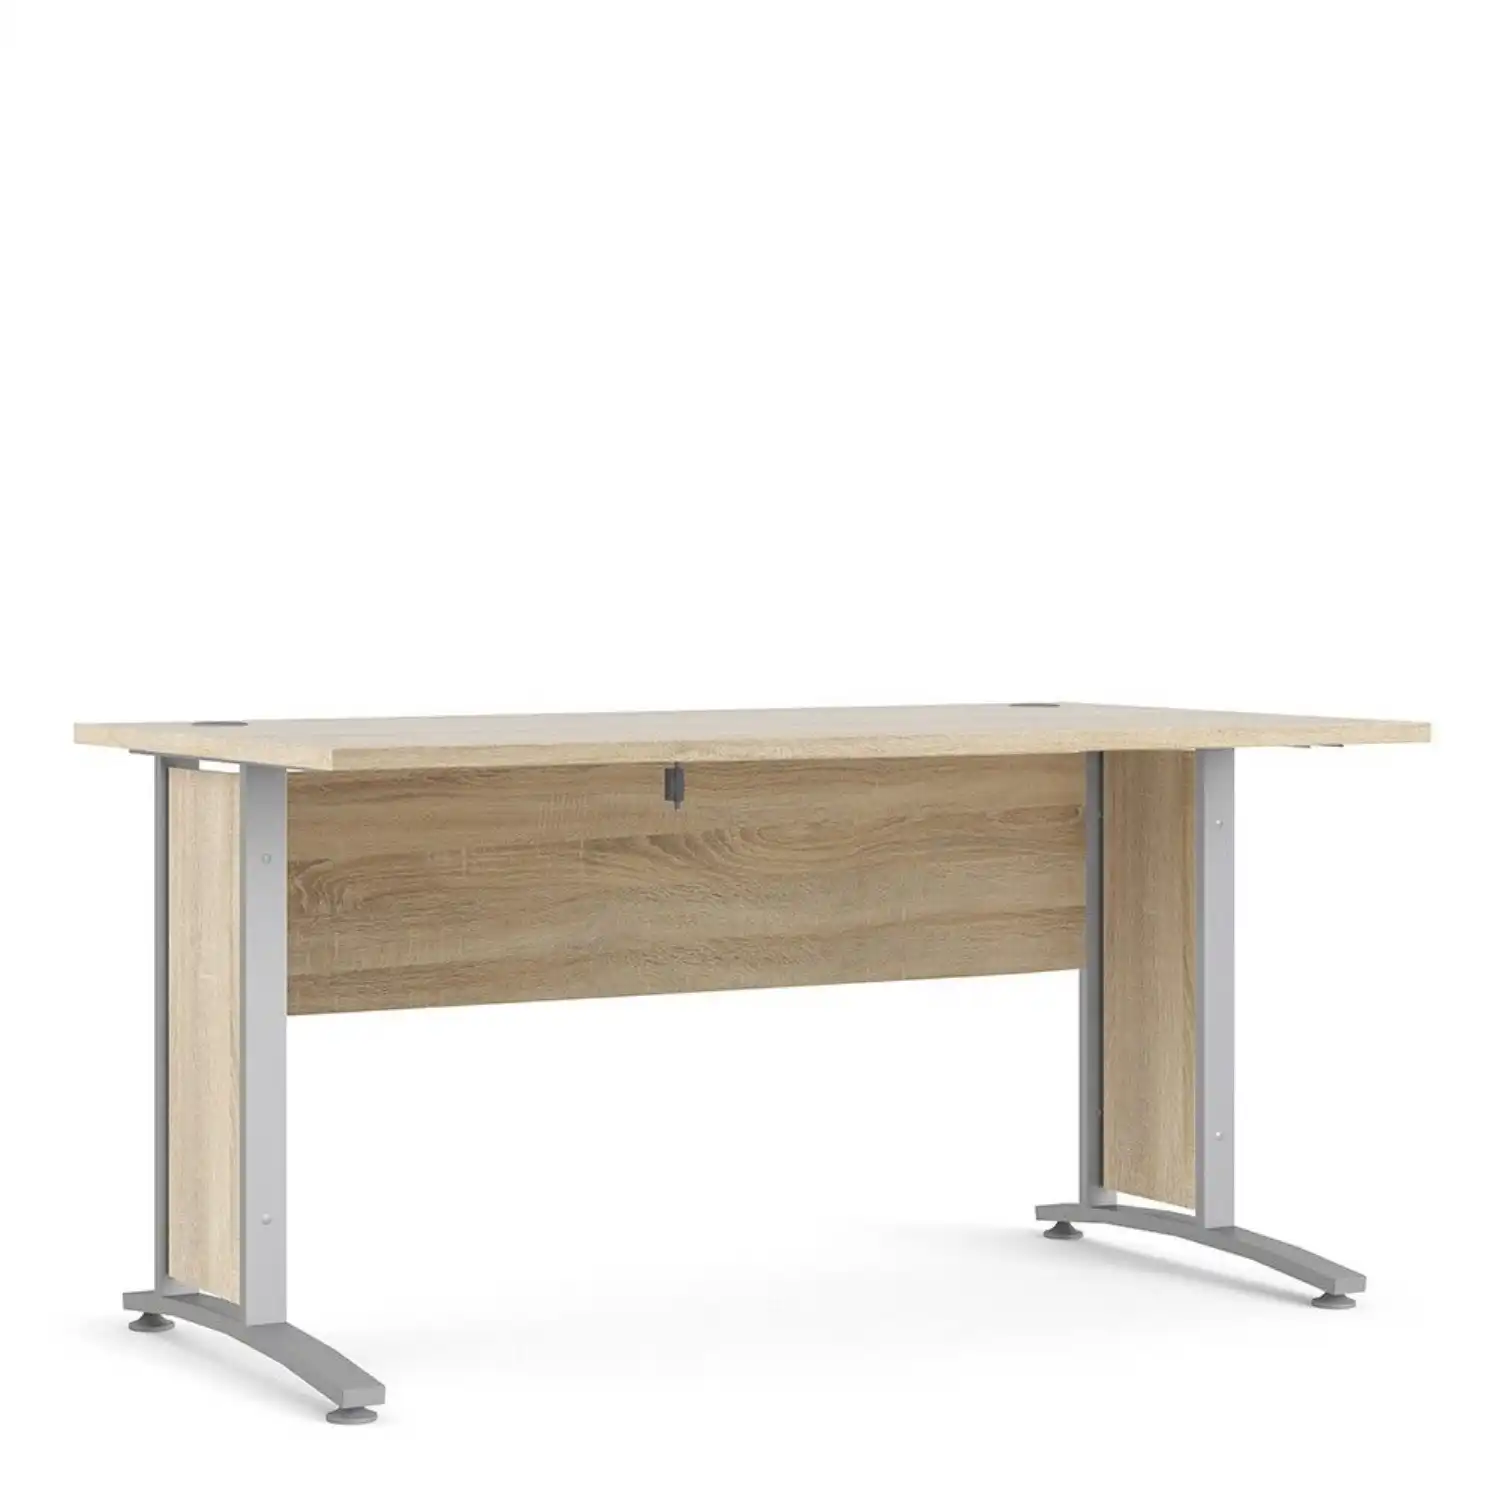 Desk 150 cm in Oak With Silver grey steel legs